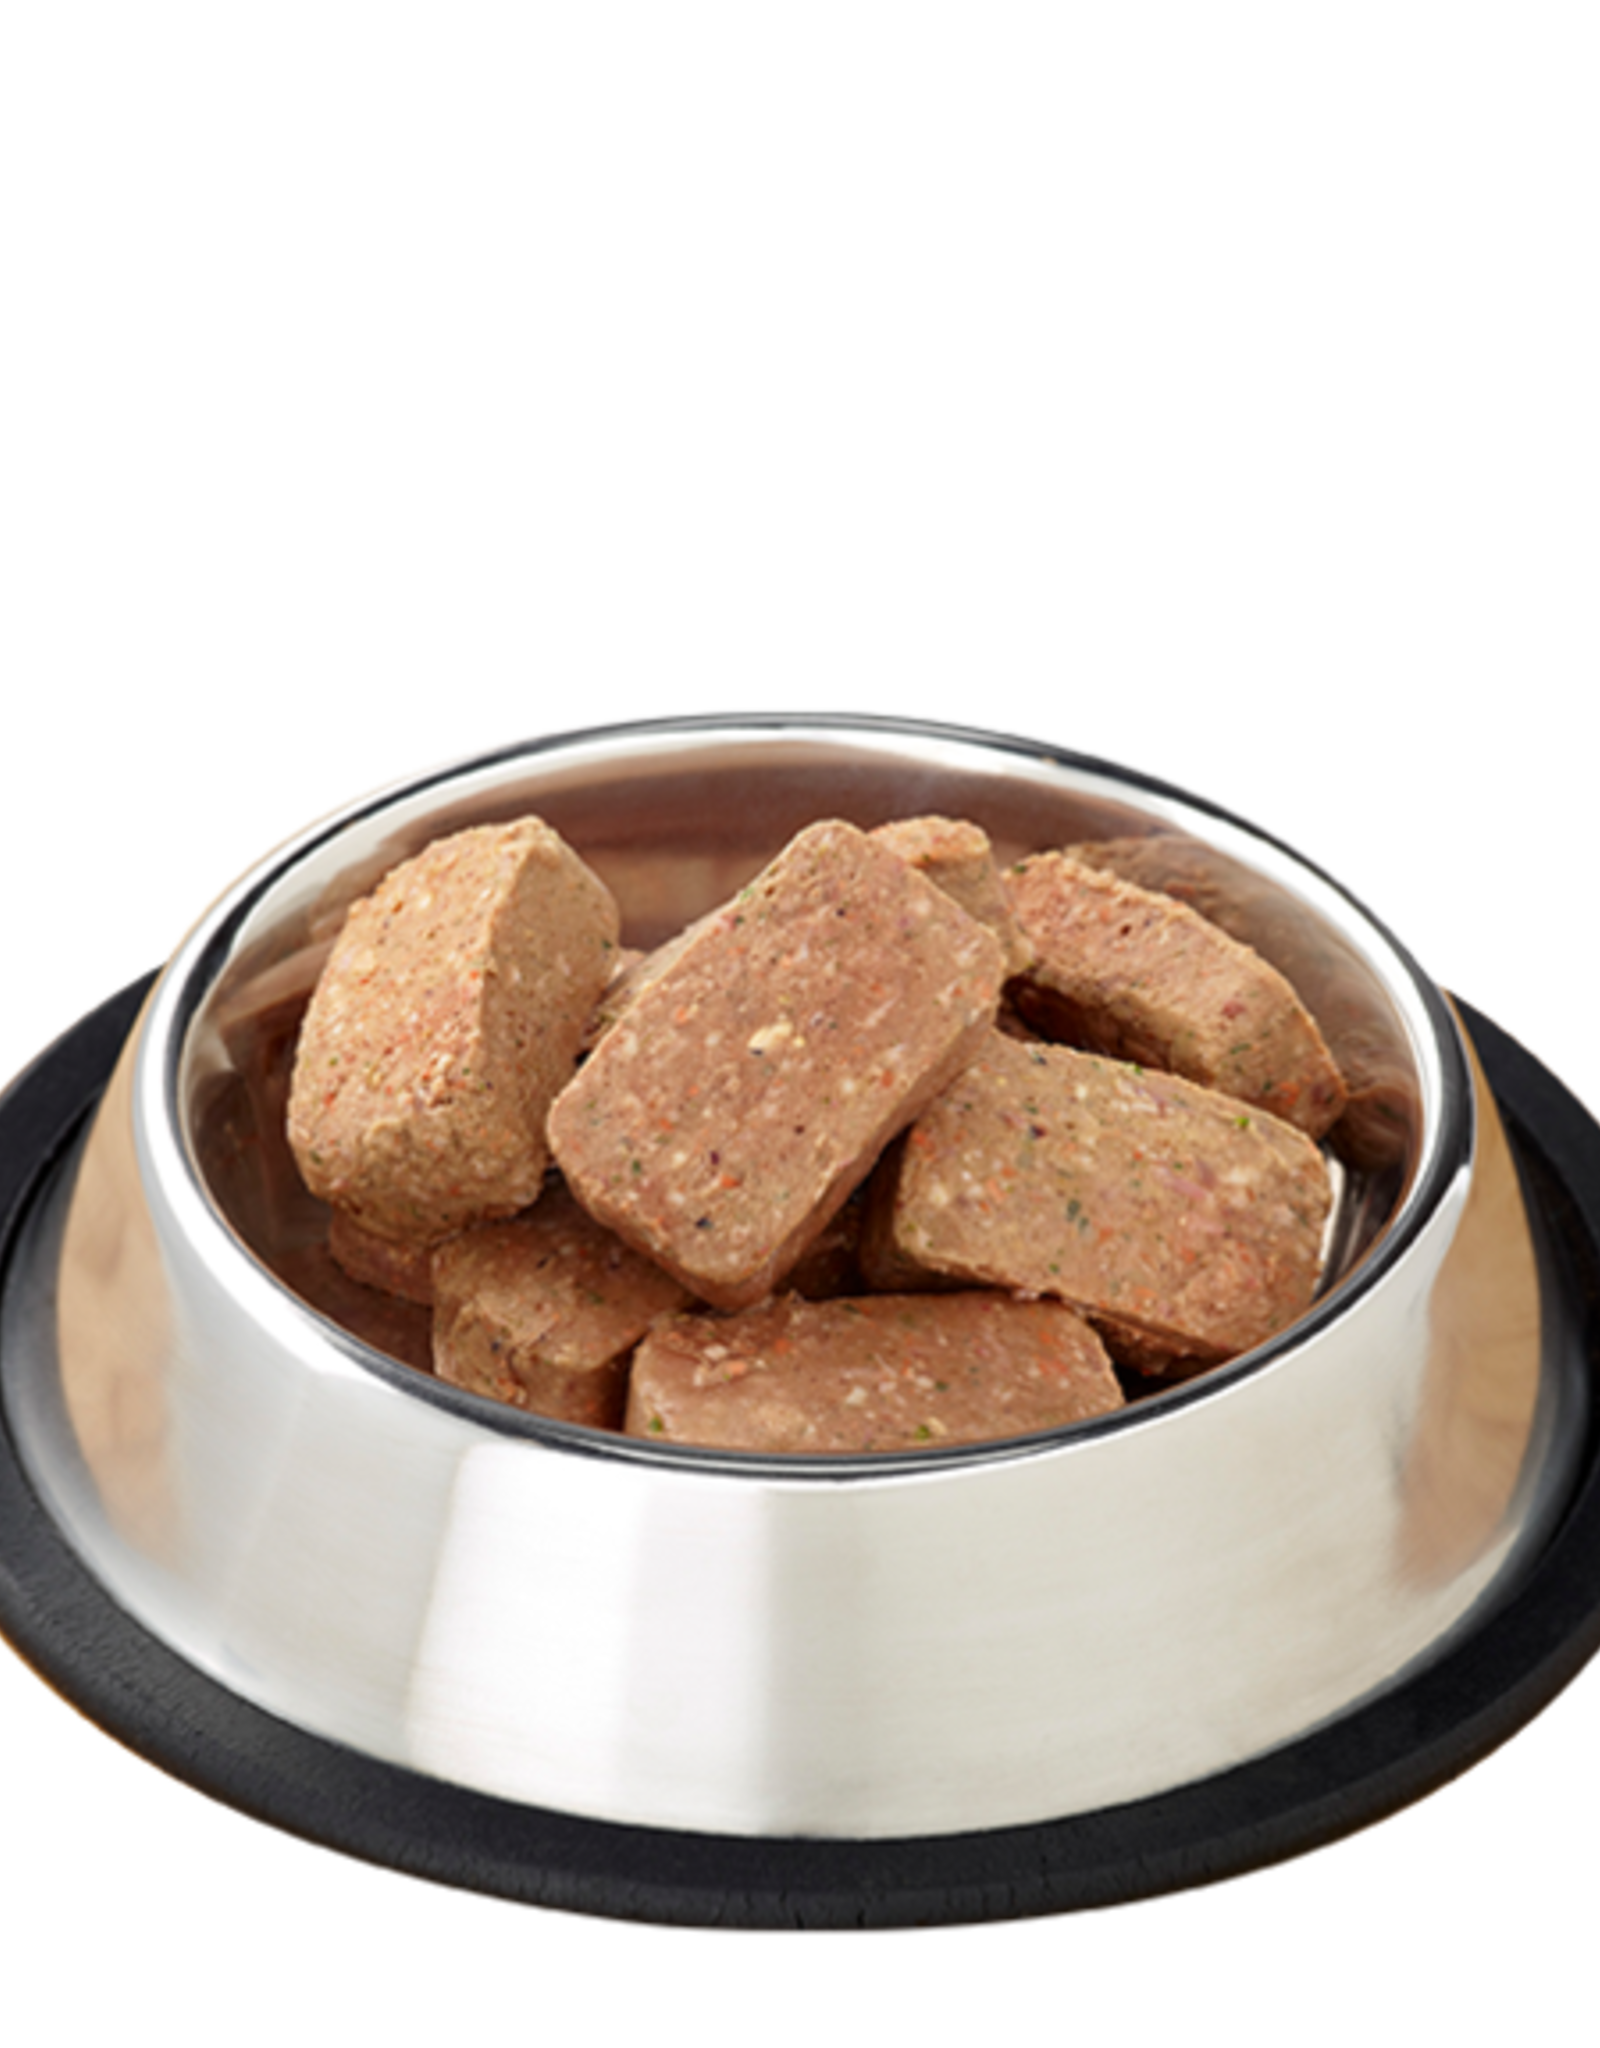 PRIMAL PET FOODS Primal | Raw Frozen Canine Pork Formula